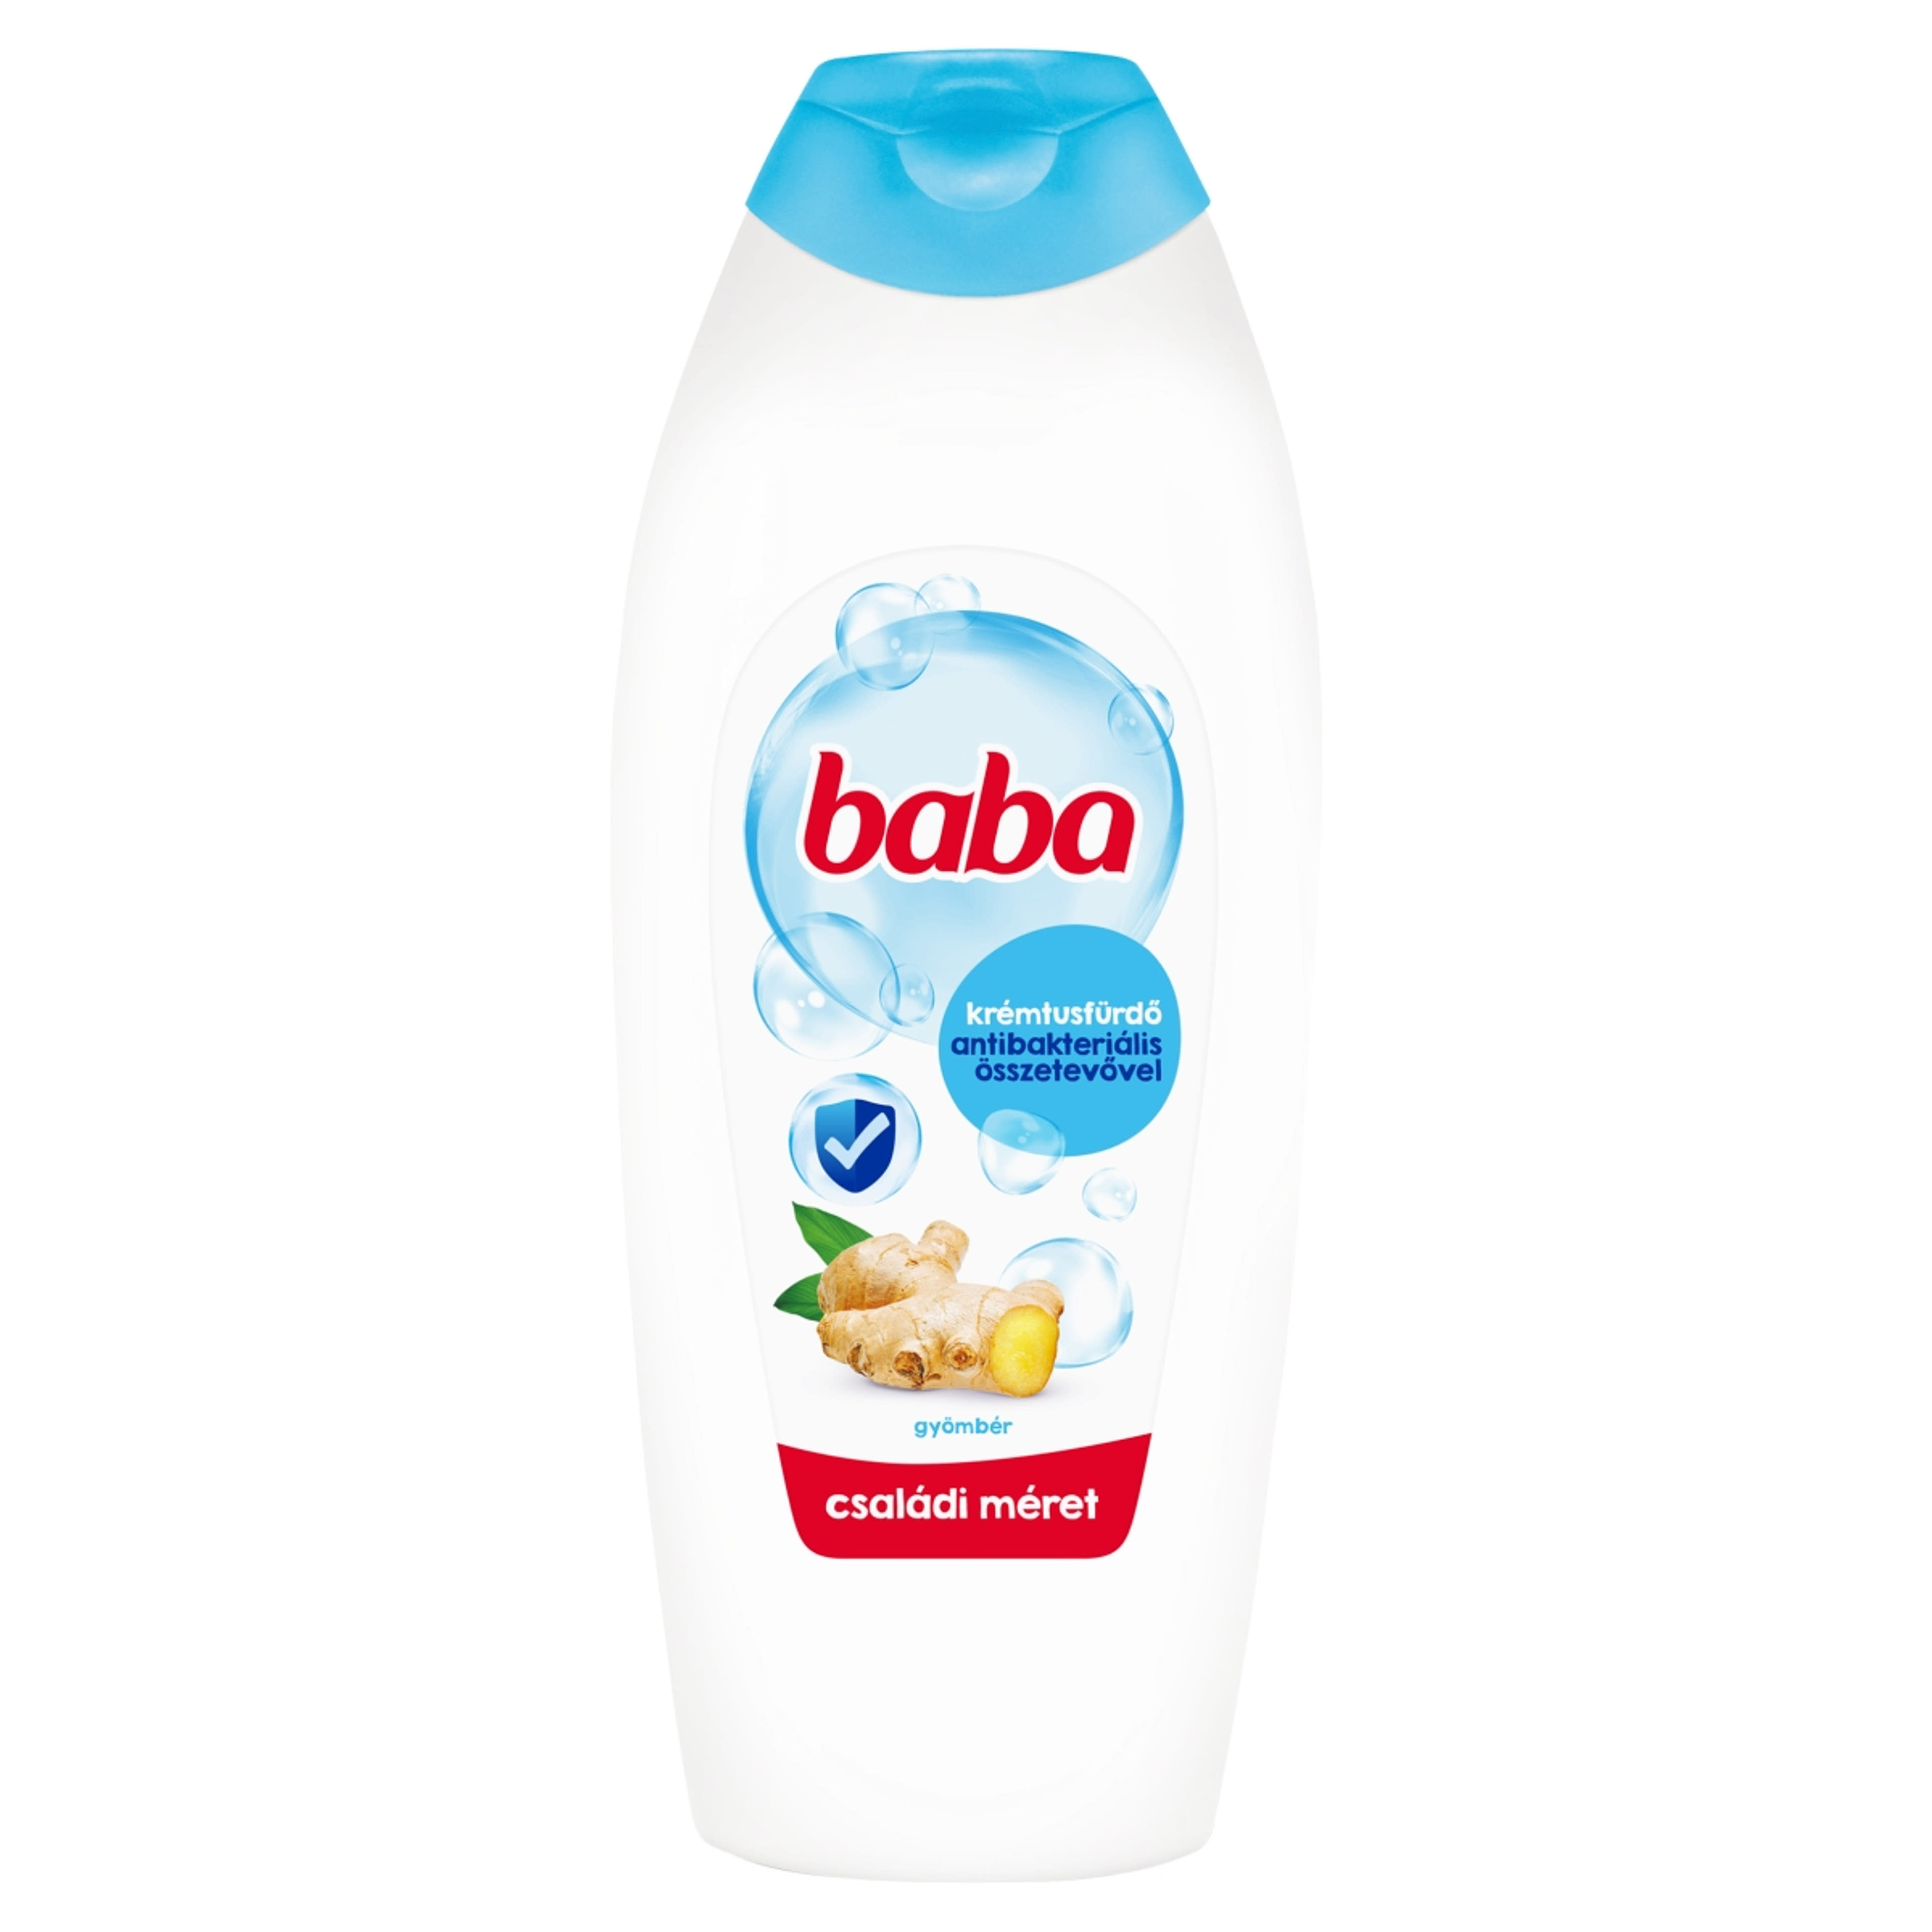 Baba krémtusfürdő antibakteriális összetevővel - 750 ml